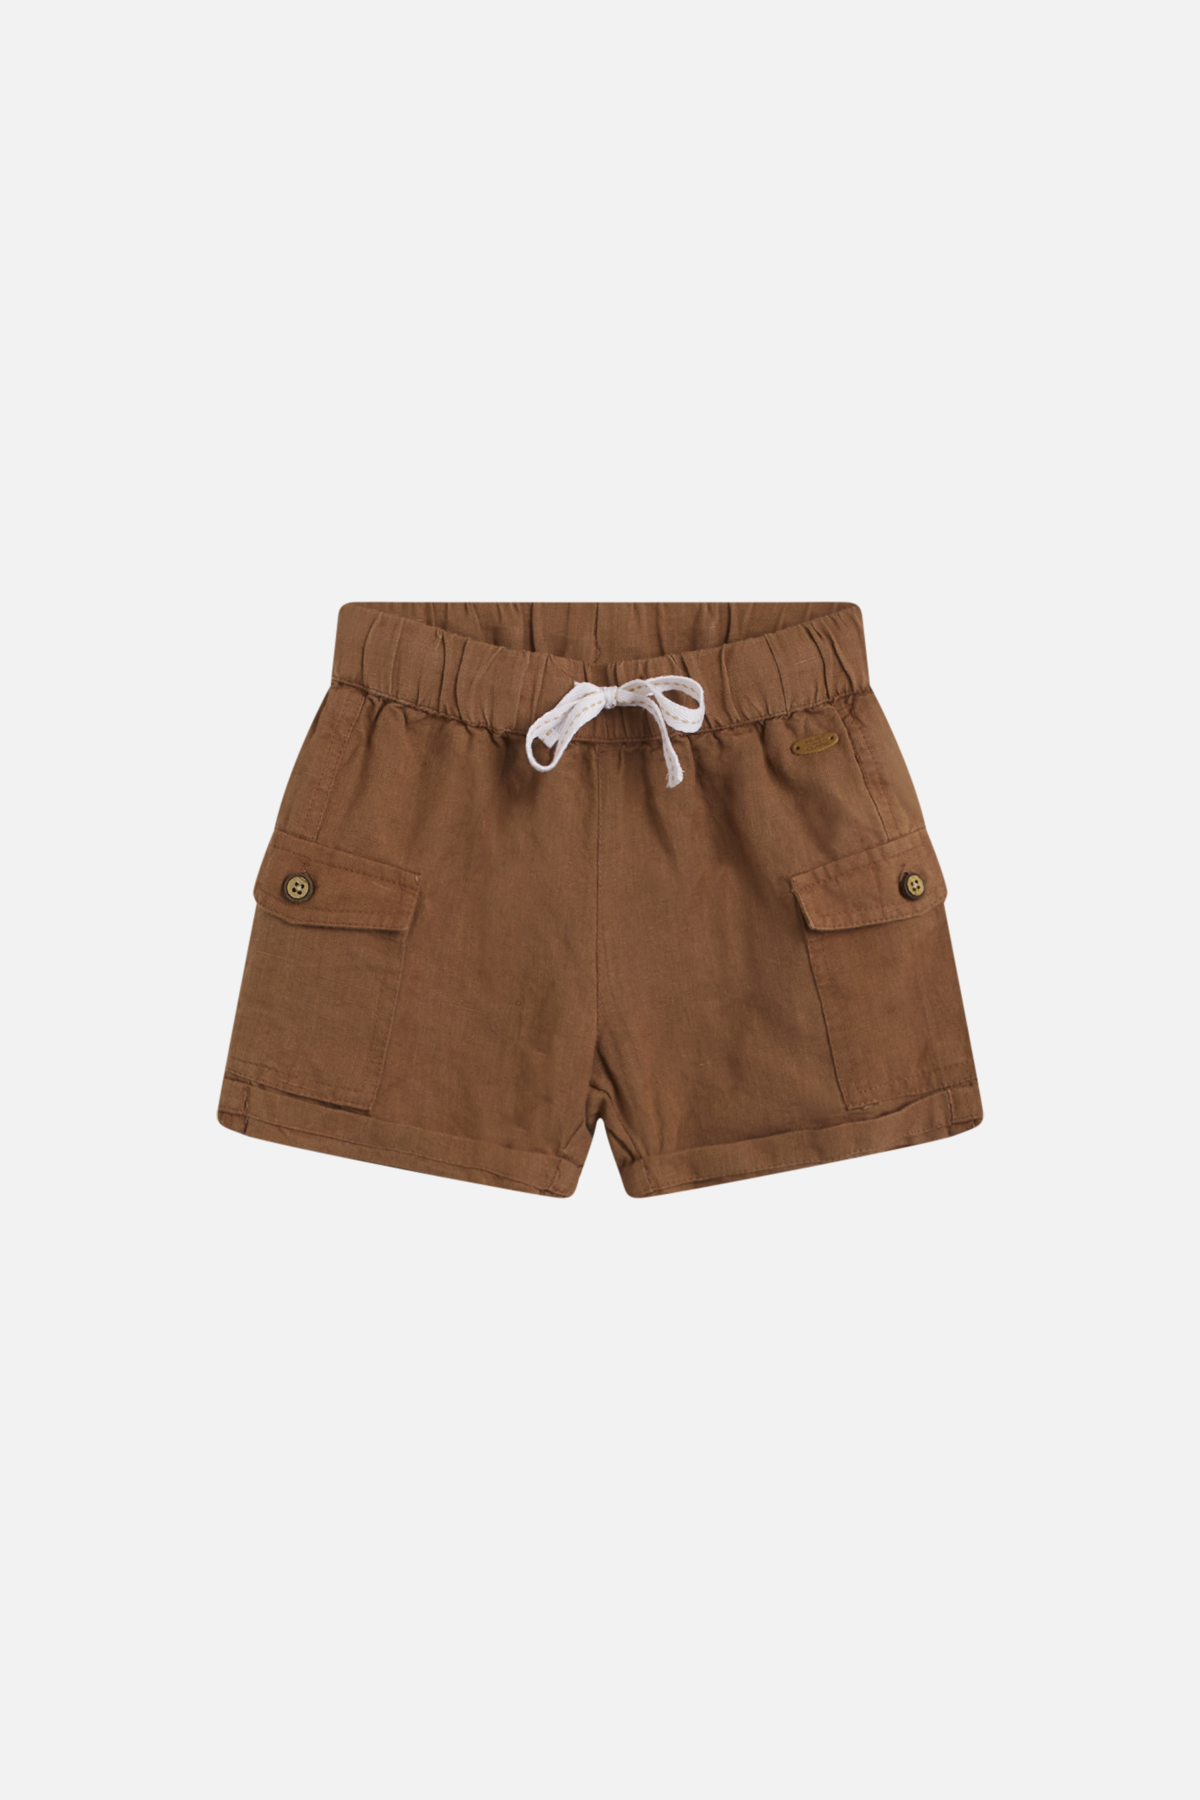 Hakon Shorts, Acorn, 104 cm